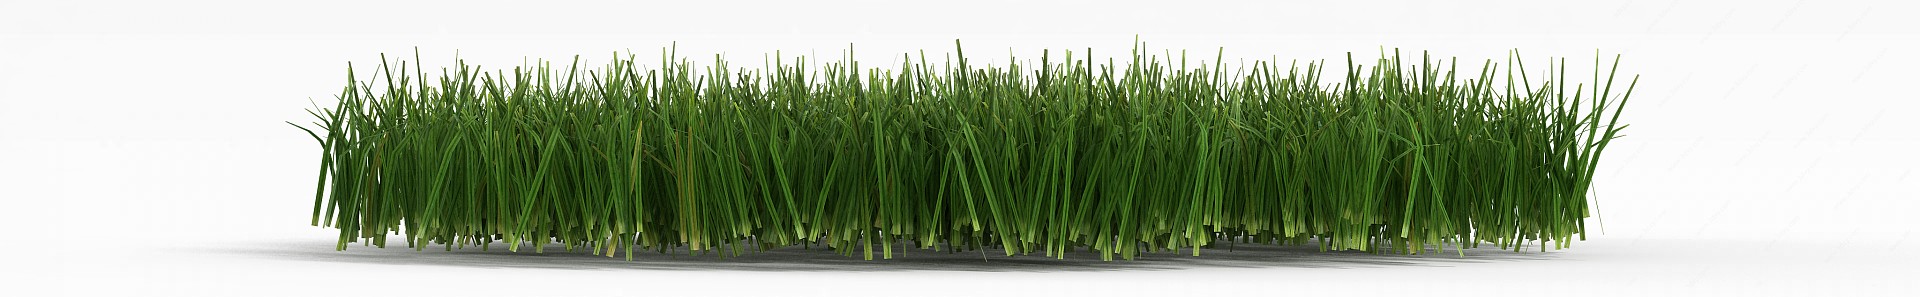 花园绿色草丛3D模型